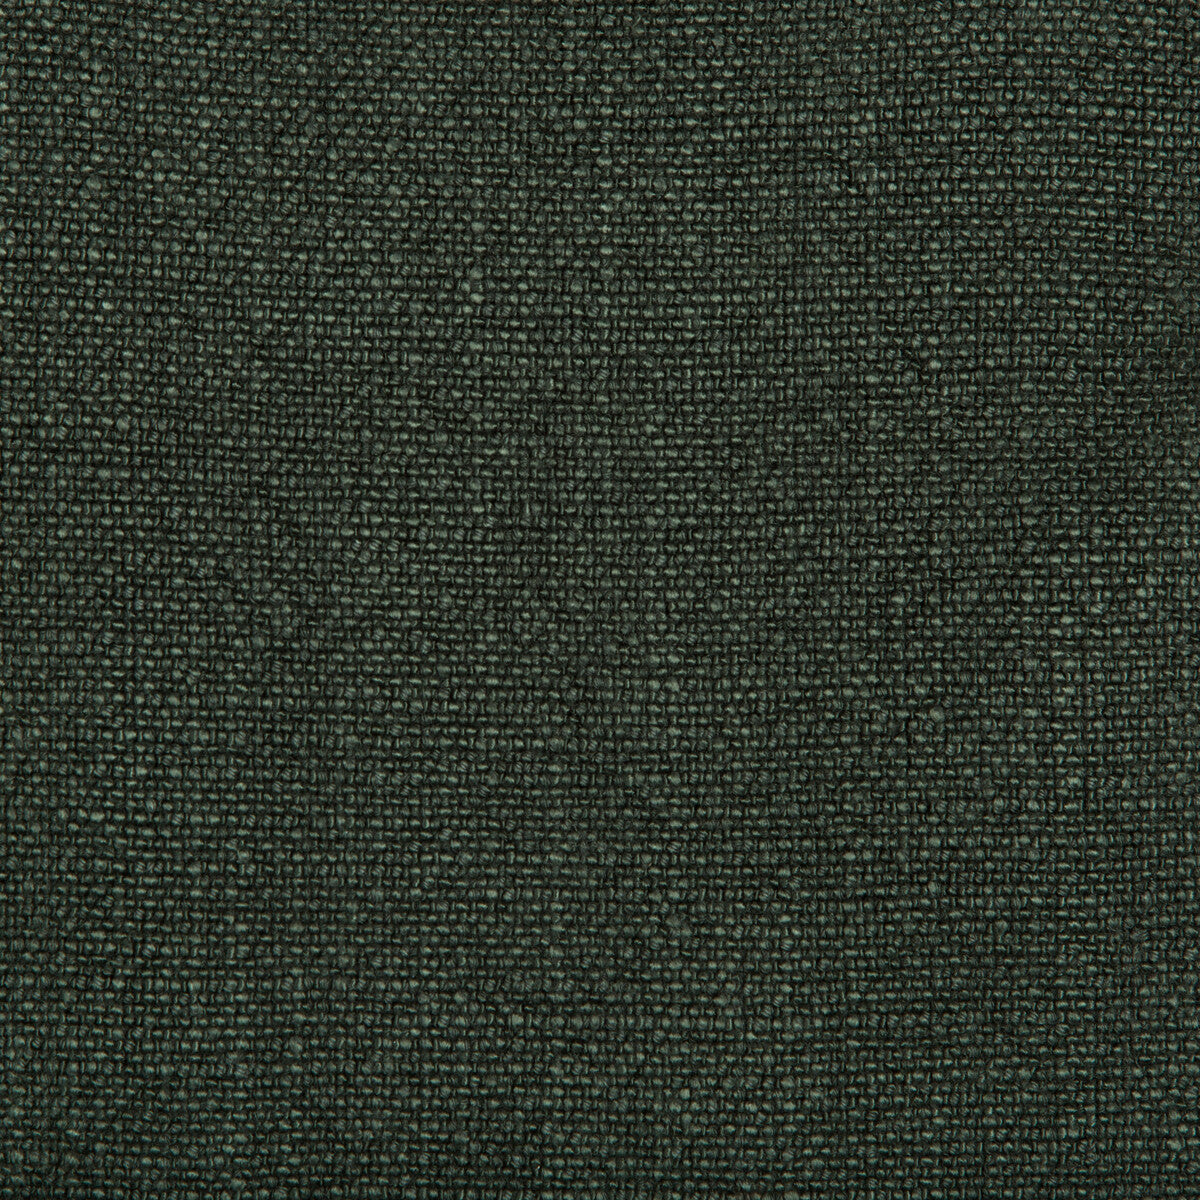 Kravet Basics fabric in 35189-30 color - pattern 35189.30.0 - by Kravet Basics